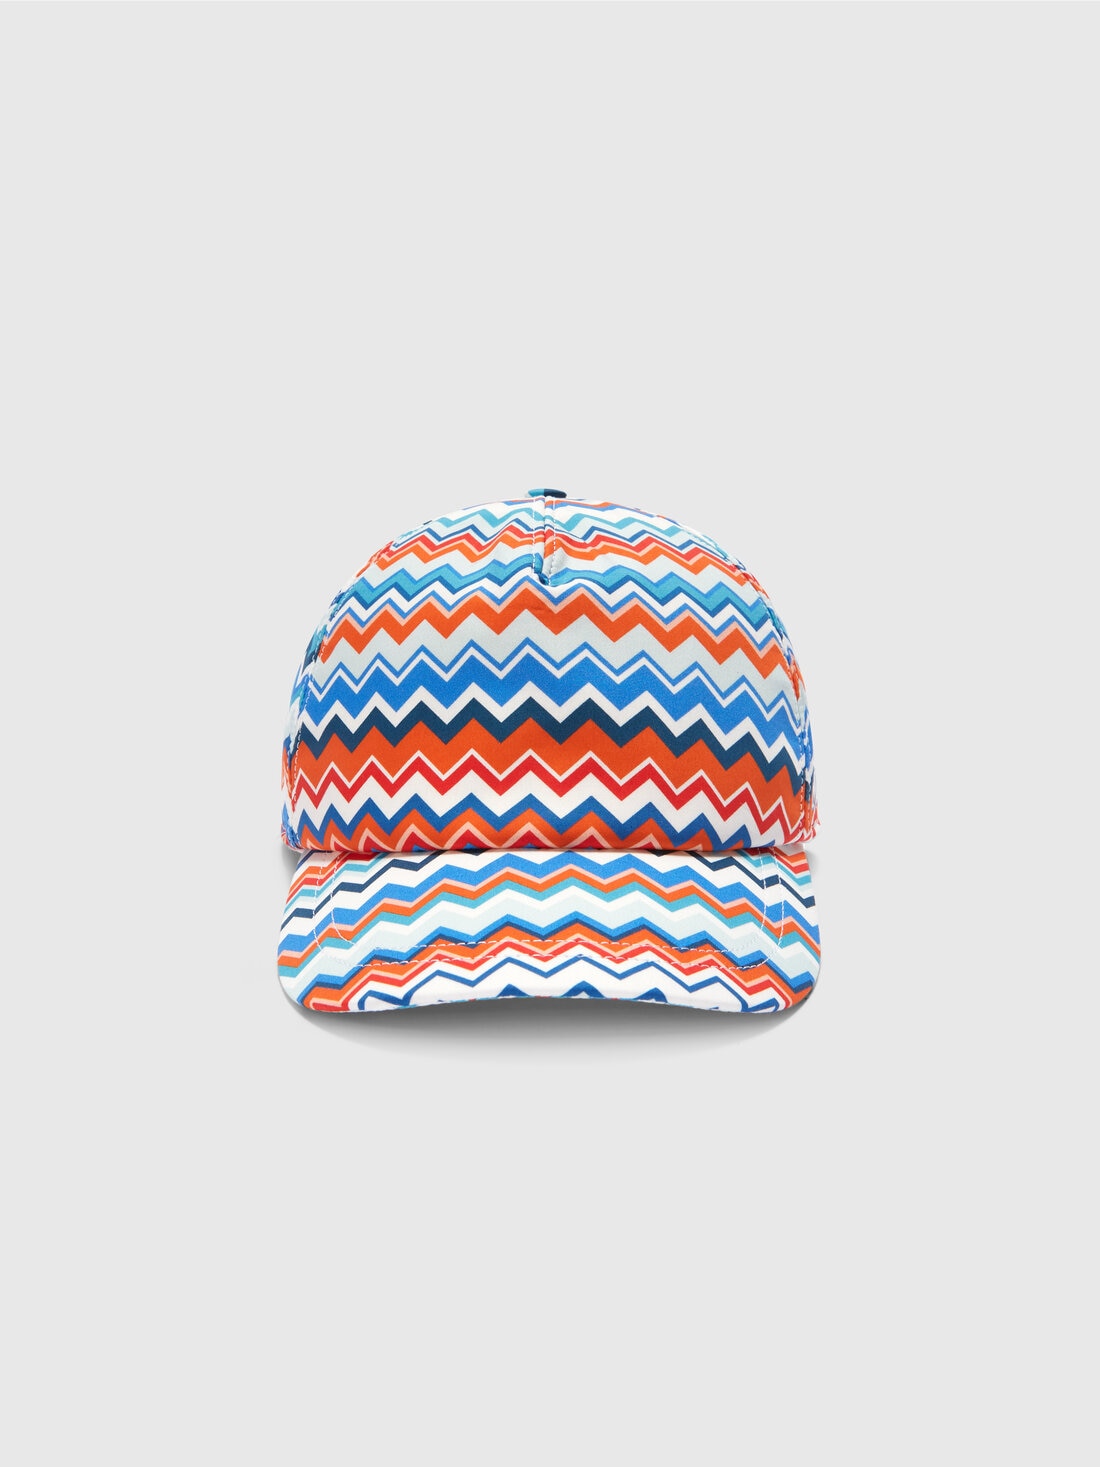 Gorra con visera de algodón en zigzag, Multicolor  - 8053147140742 - 2